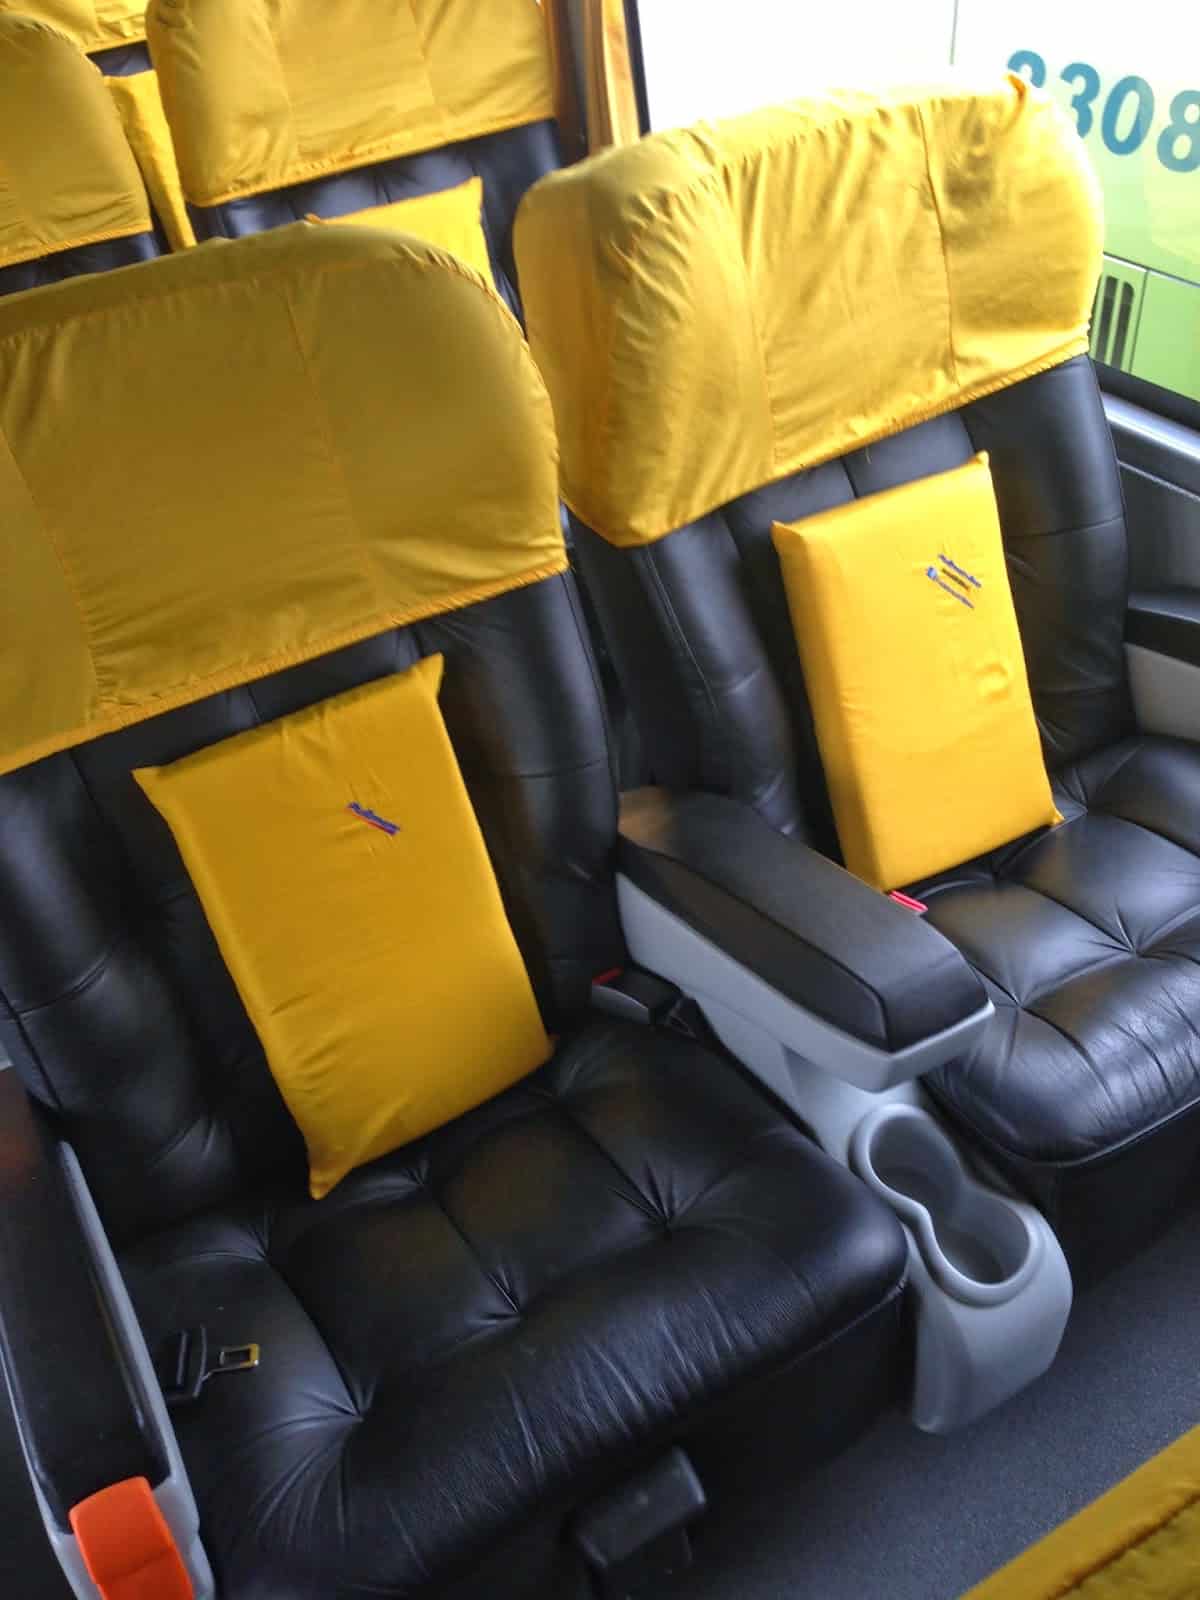 Pullman bus seat in La Serena, Chile